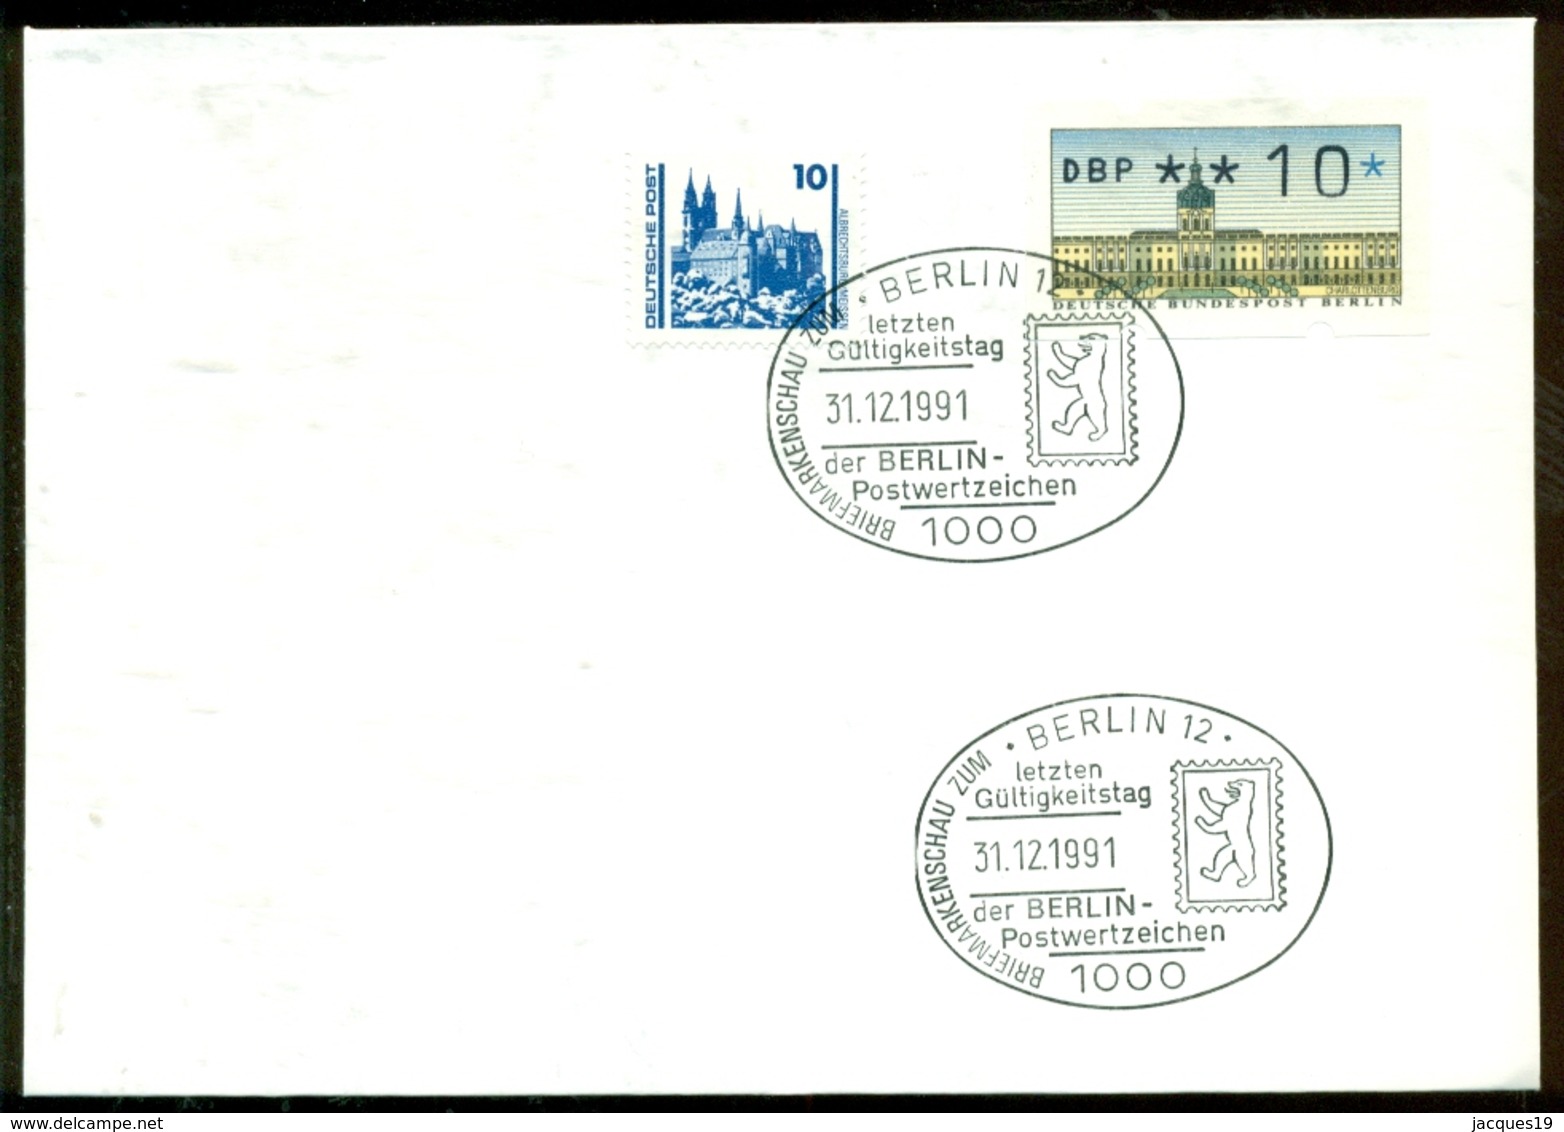 Deutschland 1991 Kombinationsbeleg Deutsche Post/Berlin Mit Berlin Letztgültigkeitsstempel - Storia Postale